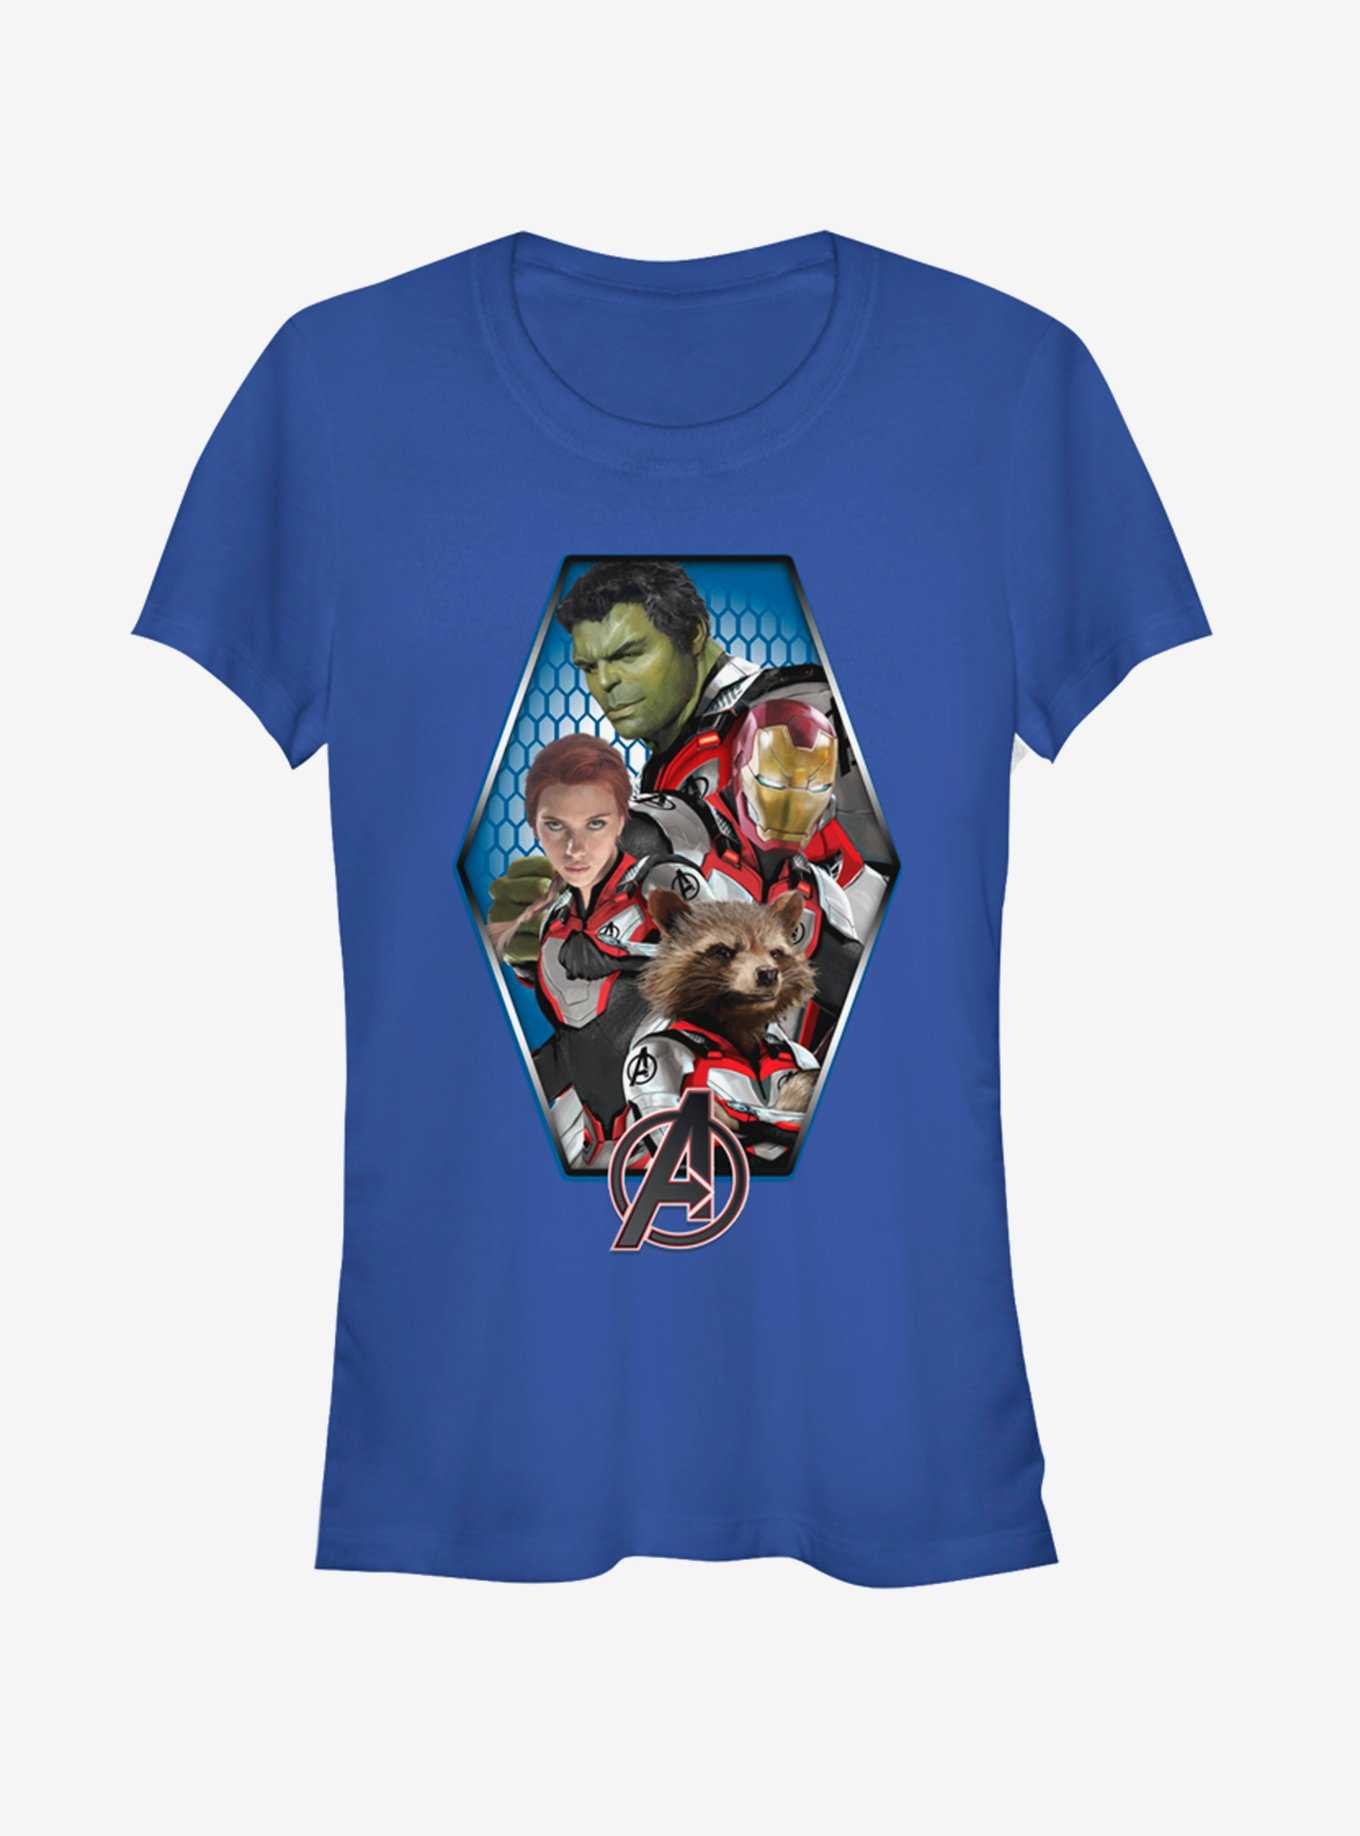 Marvel Avengers: Endgame Hexagon Avenged Girls Royal Blue T-Shirt, , hi-res